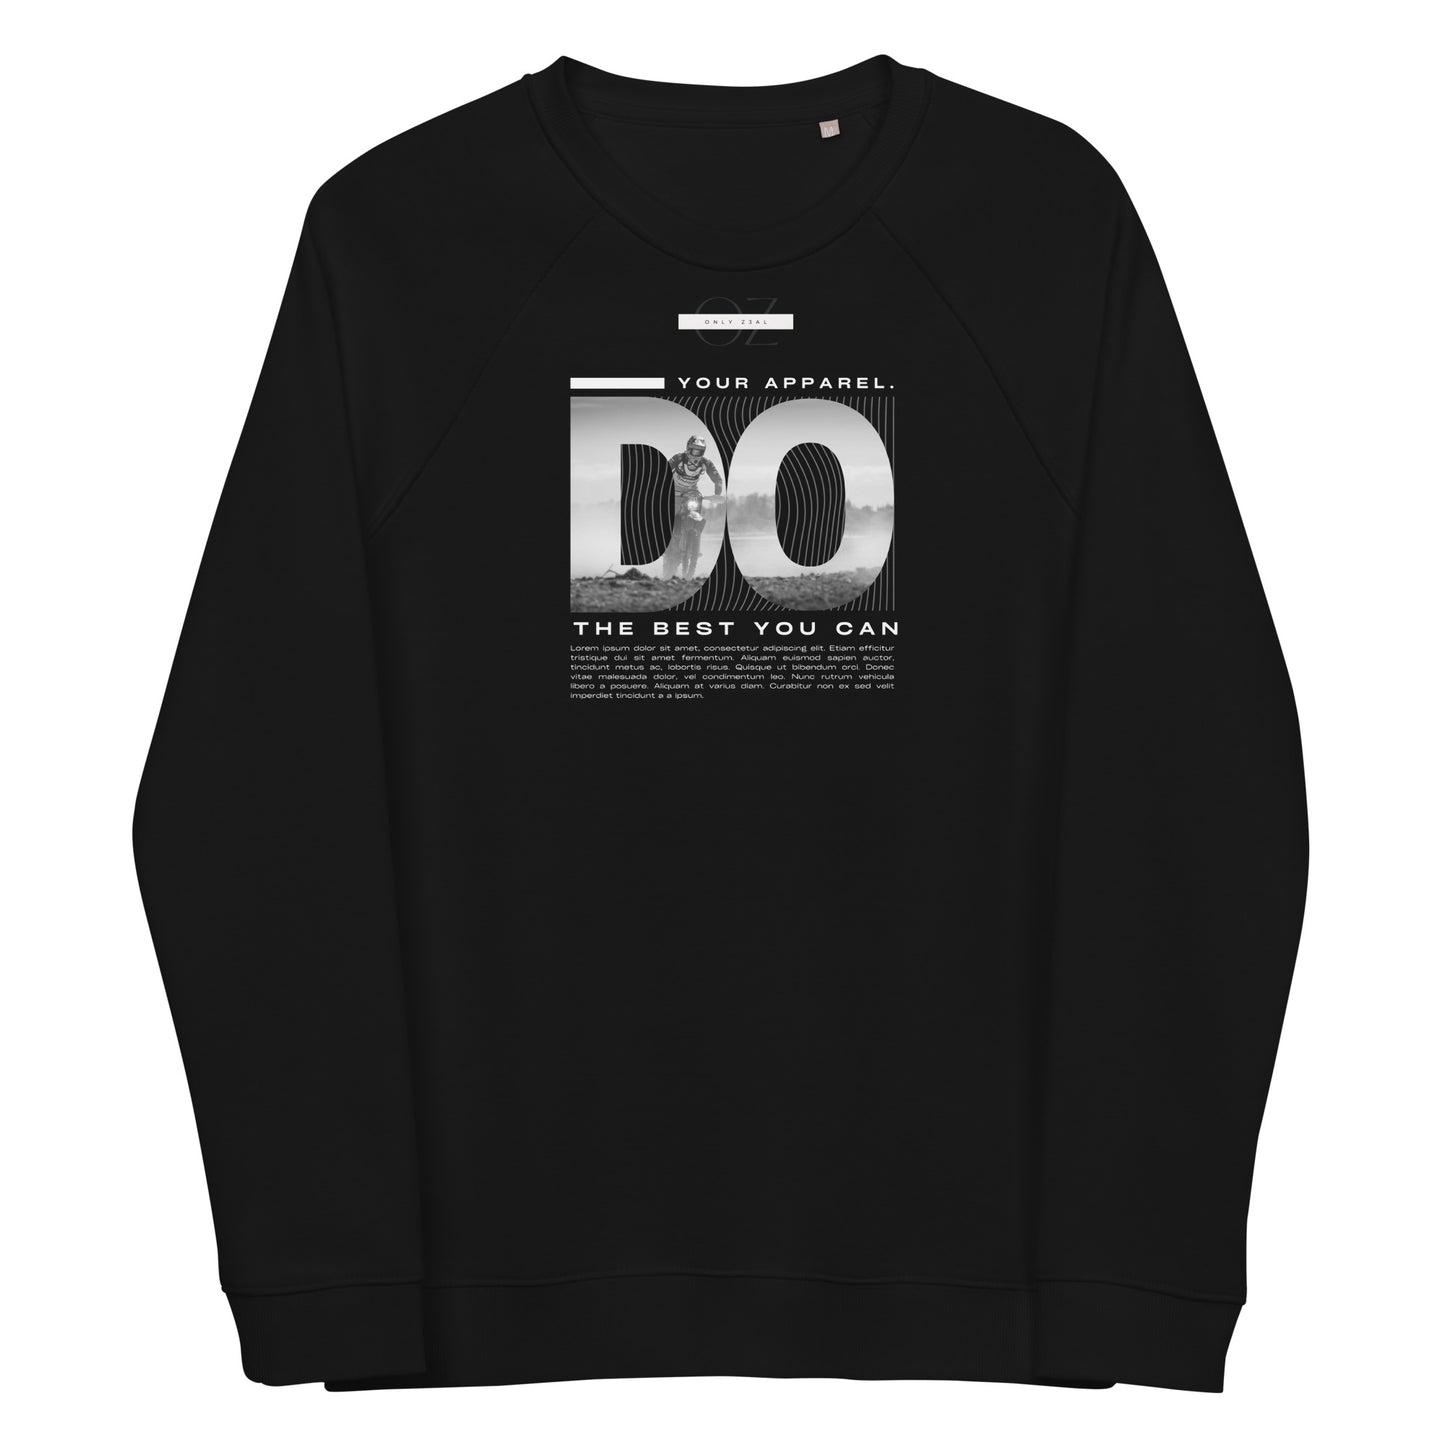 DO THE BEST Black Cotton Fleece Sweatshirt | Reglan sleeves| ONLYZ3AL | coolest  Black sweatshirt with design